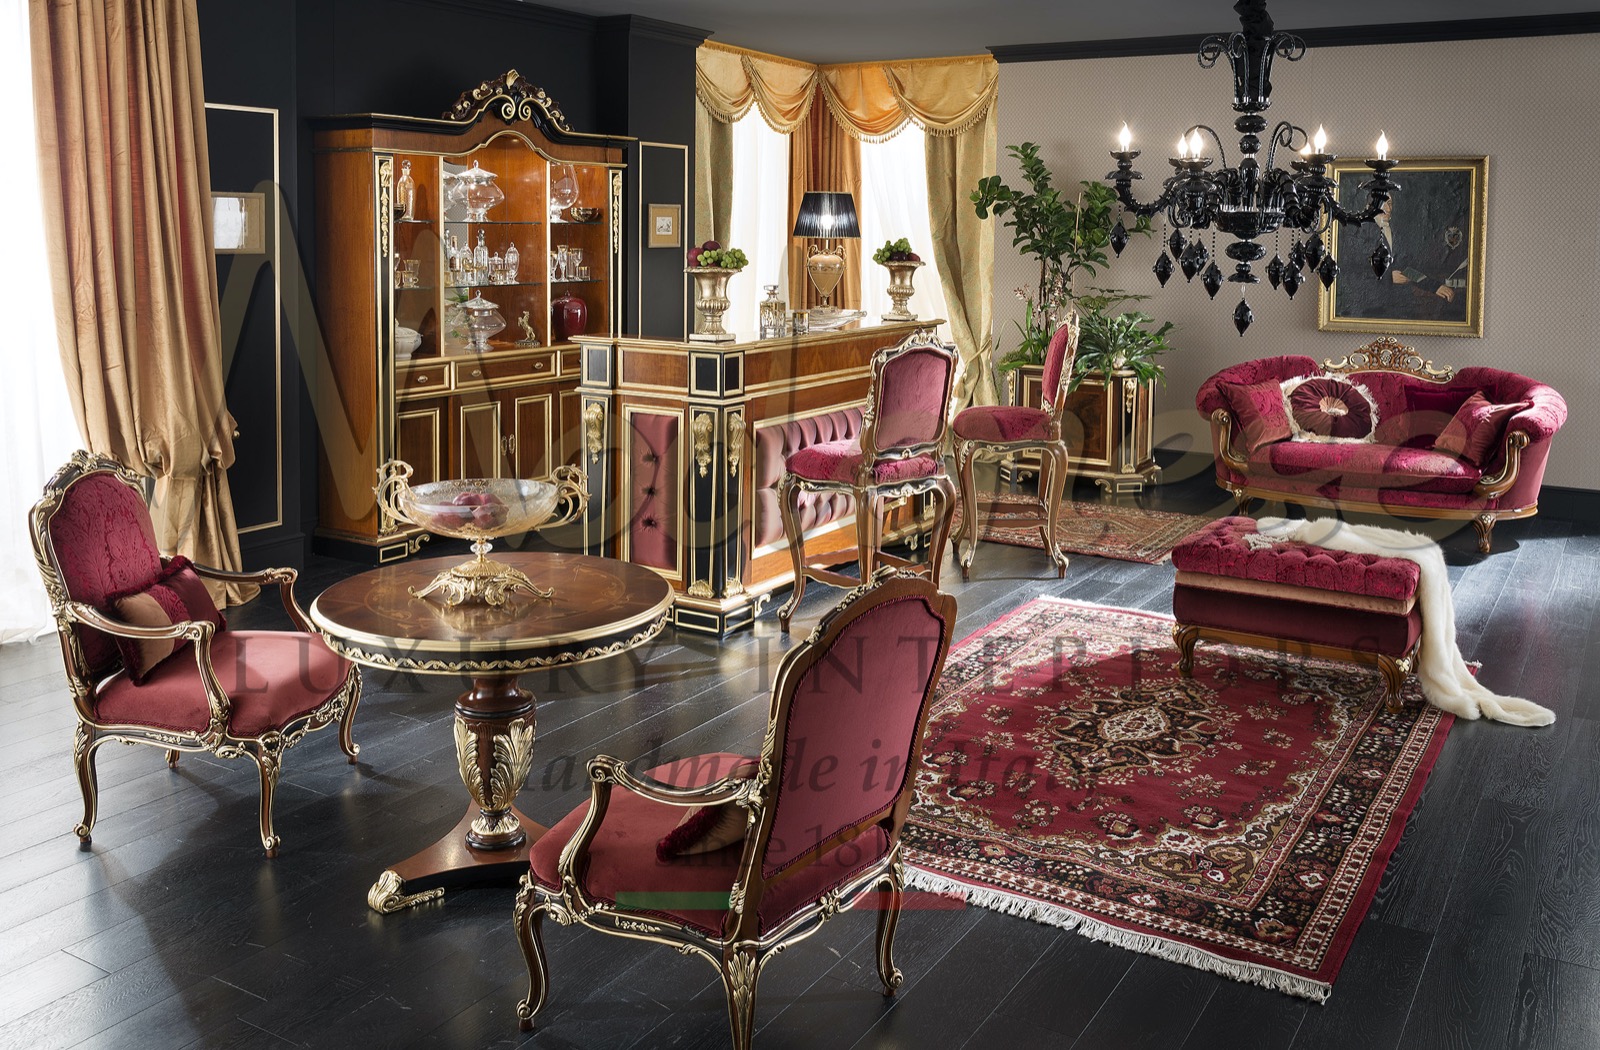 Производство роскошной итальянской мебели ручной работы на заказ элегантный изысканный дизайн эксклюзивные проекты домашний декор виллы золотые детали лучшие интерьеры